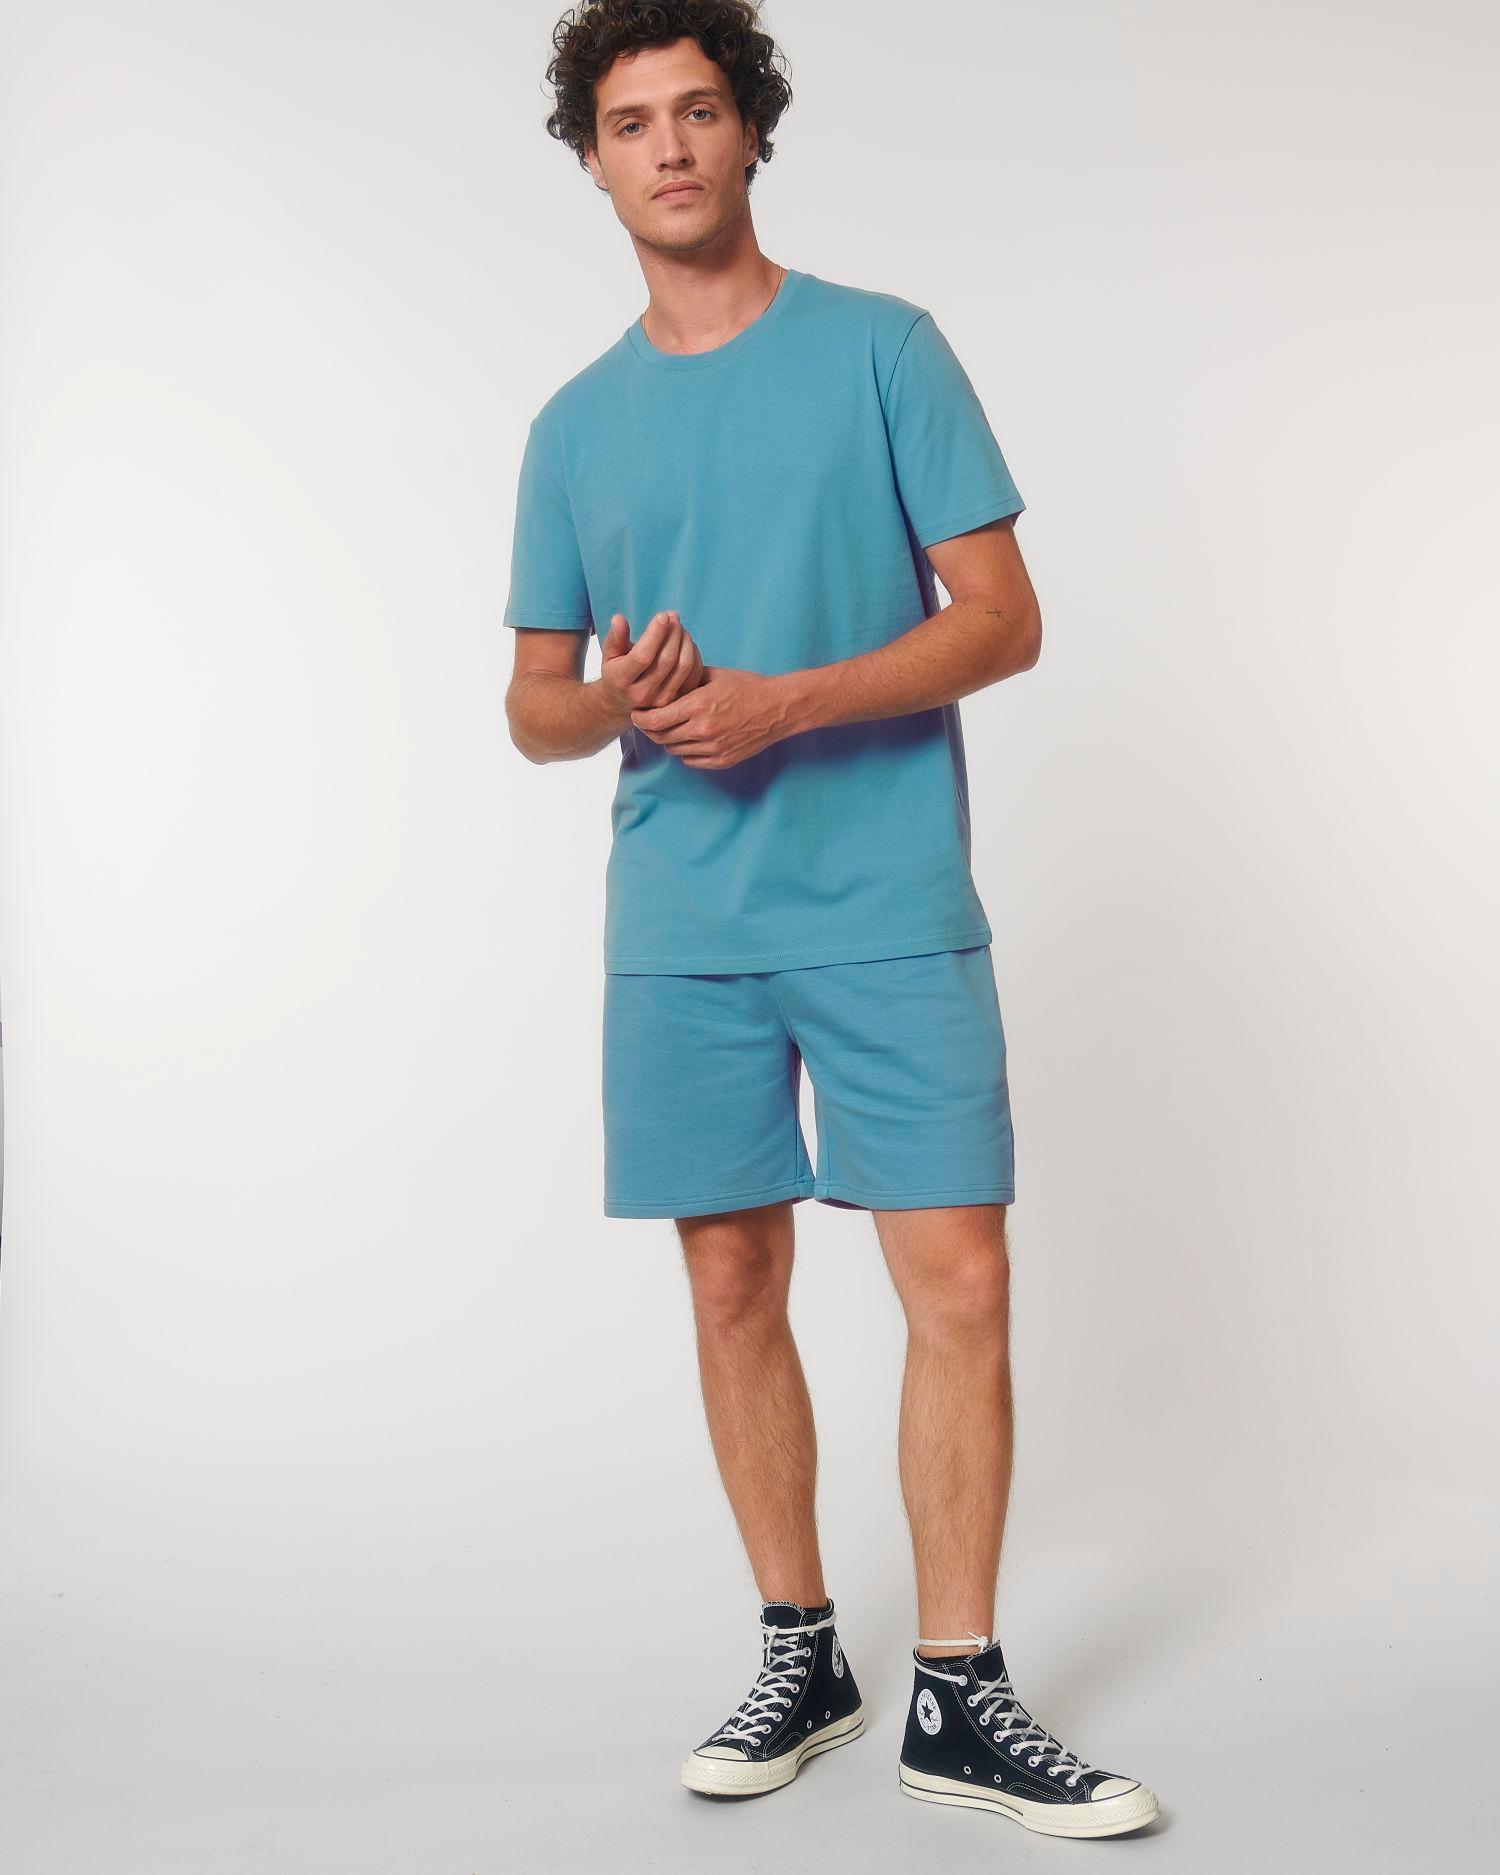 pictoT-Shirt Unisexe 100% Coton Bio | Broderie Et Impression Atlantic Blue